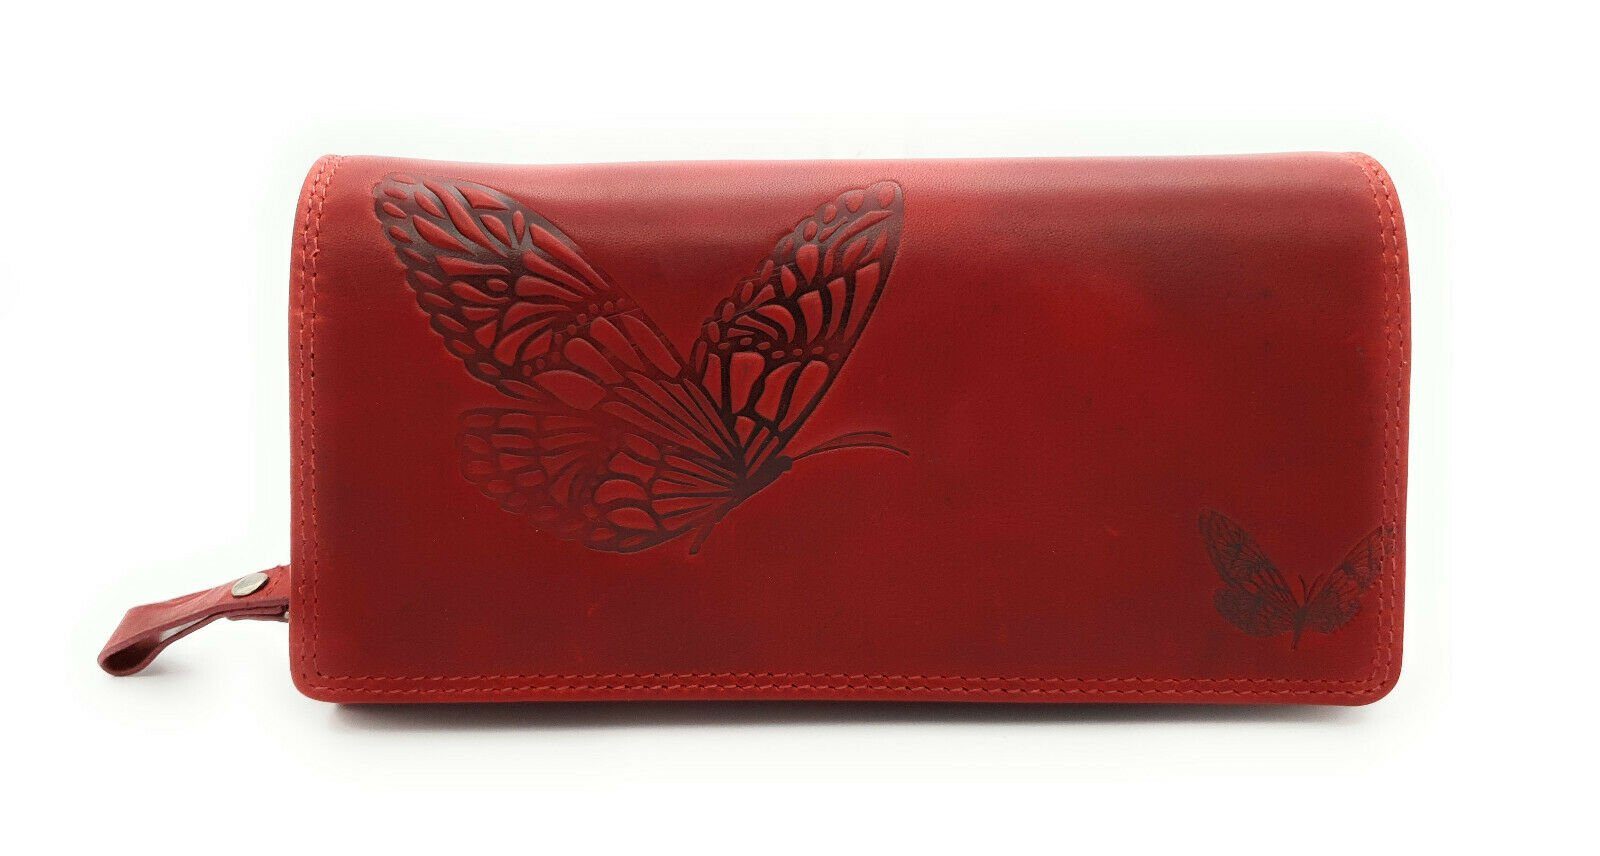 JOCKEY CLUB Geldbörse echt Leder Damen Geldbörse mit RFID Schutz Schmetterling, Sauvage Rindleder, cherry rot, viel Platz